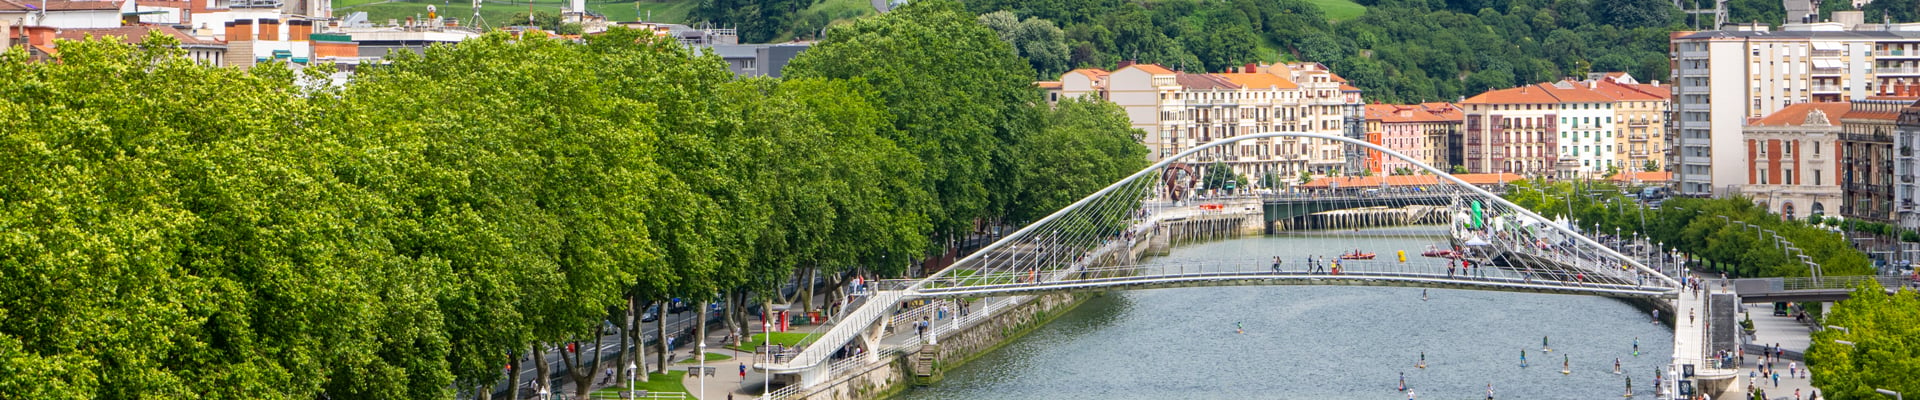 Zubizuri Bridge in Bilbao, Spain